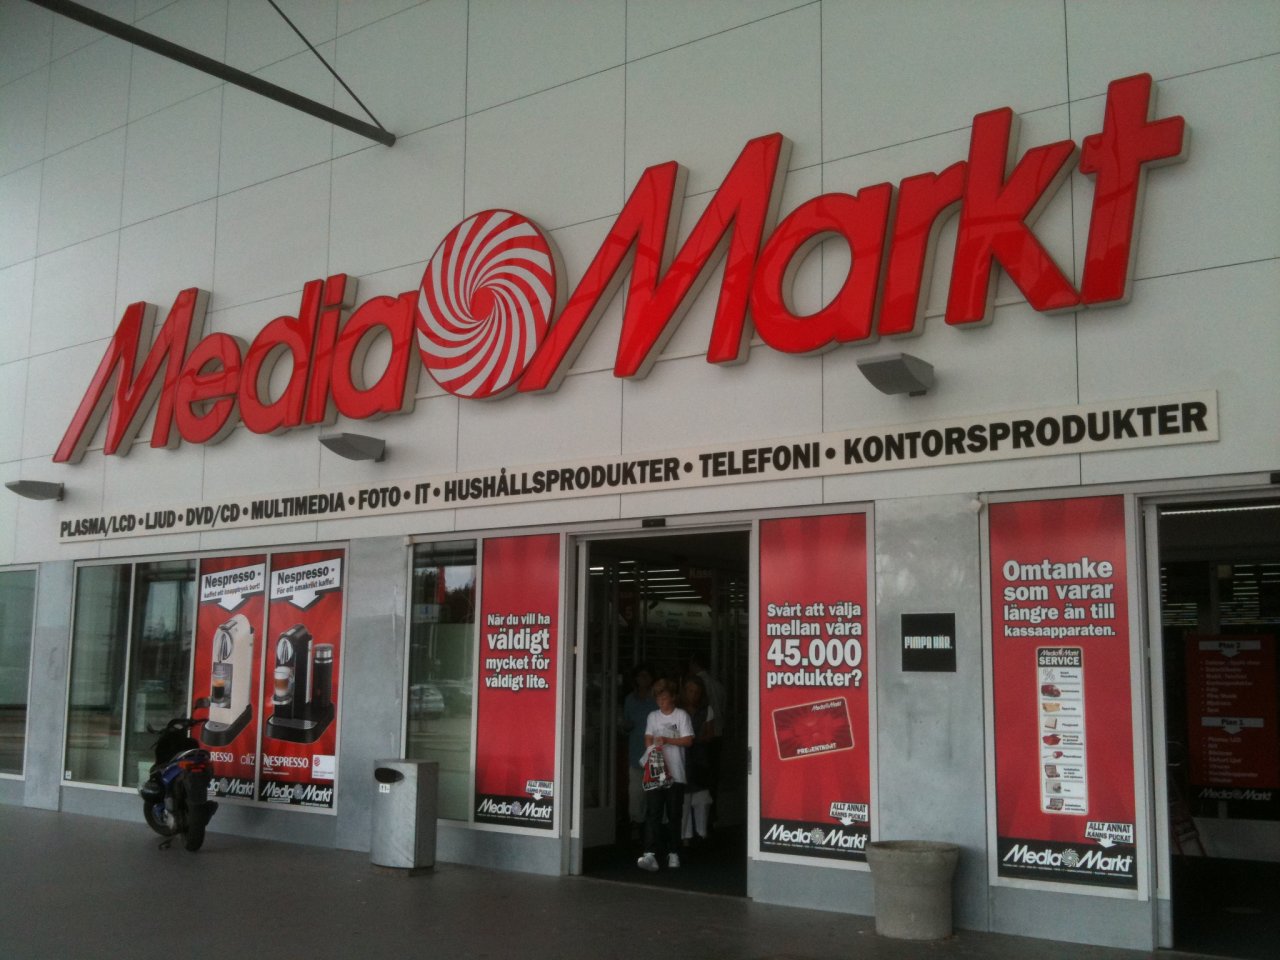 Mediamarkt utsatta för ransomware-attack - Nyhetskommentarer